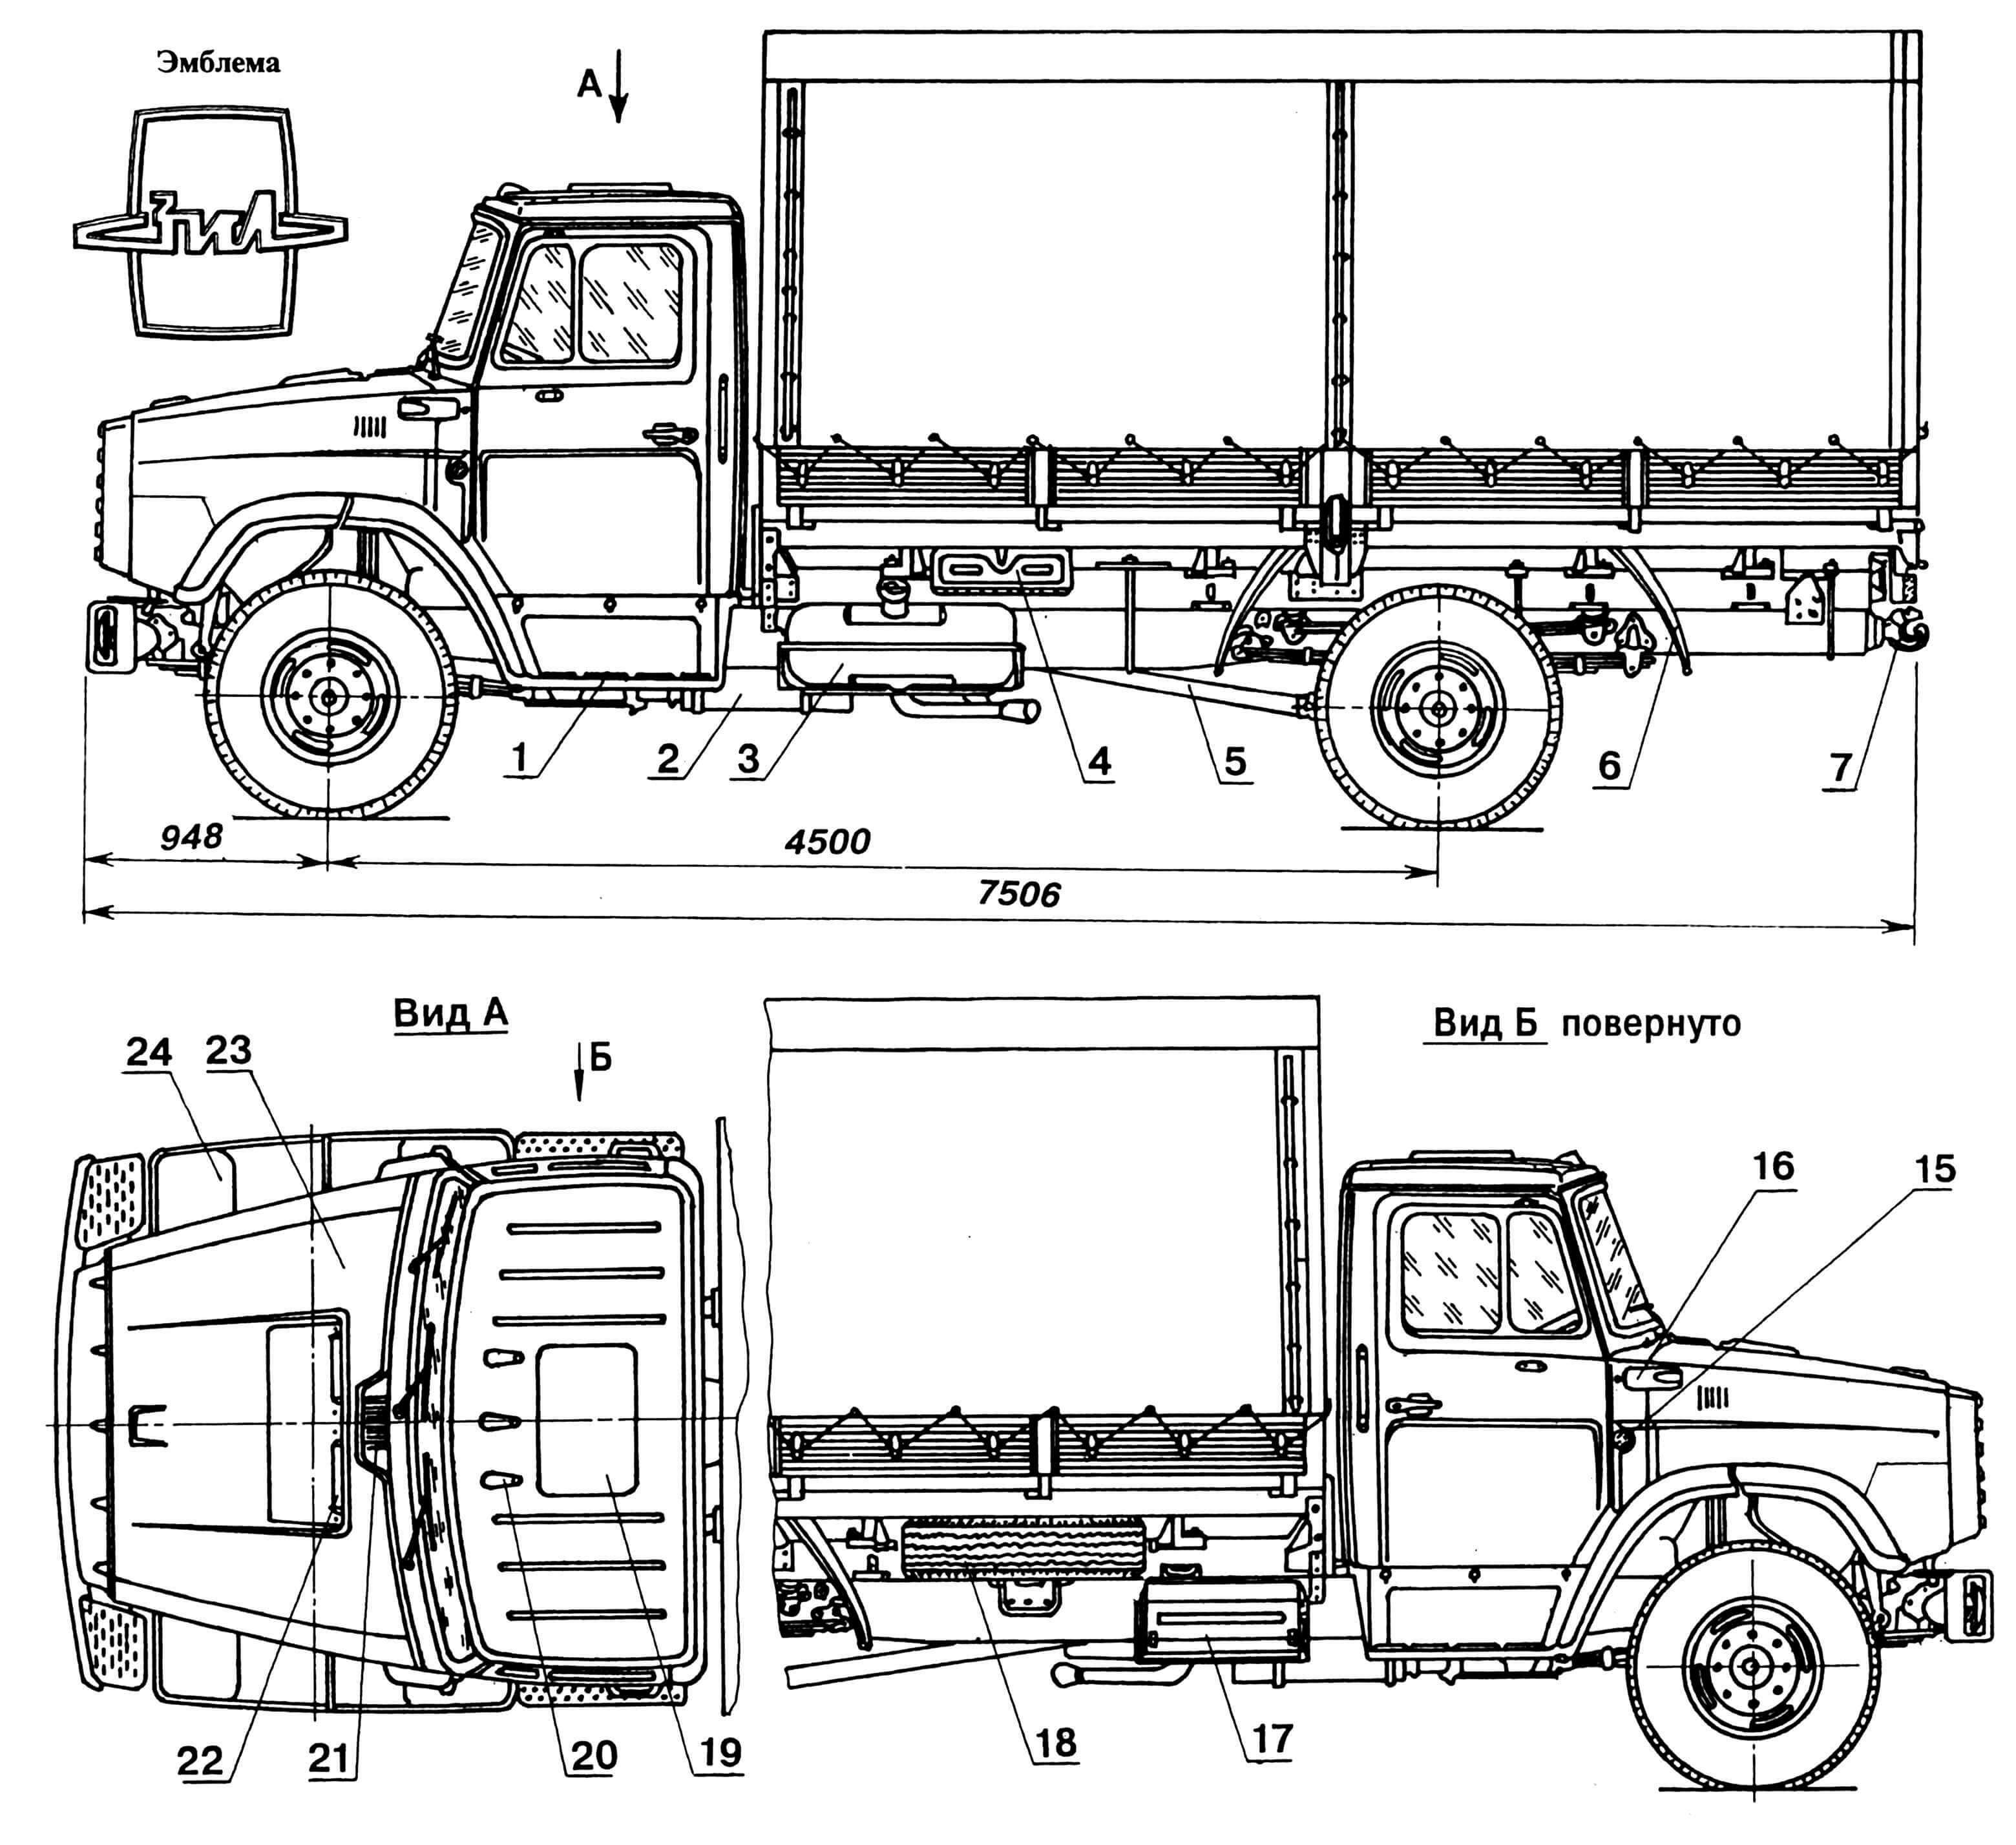 ЗИЛ4331 Современная замена для легендарного грузовика ЗИЛ130 Разработанные по специальному заказу модели 4331 обладают широкими возможностями, но и